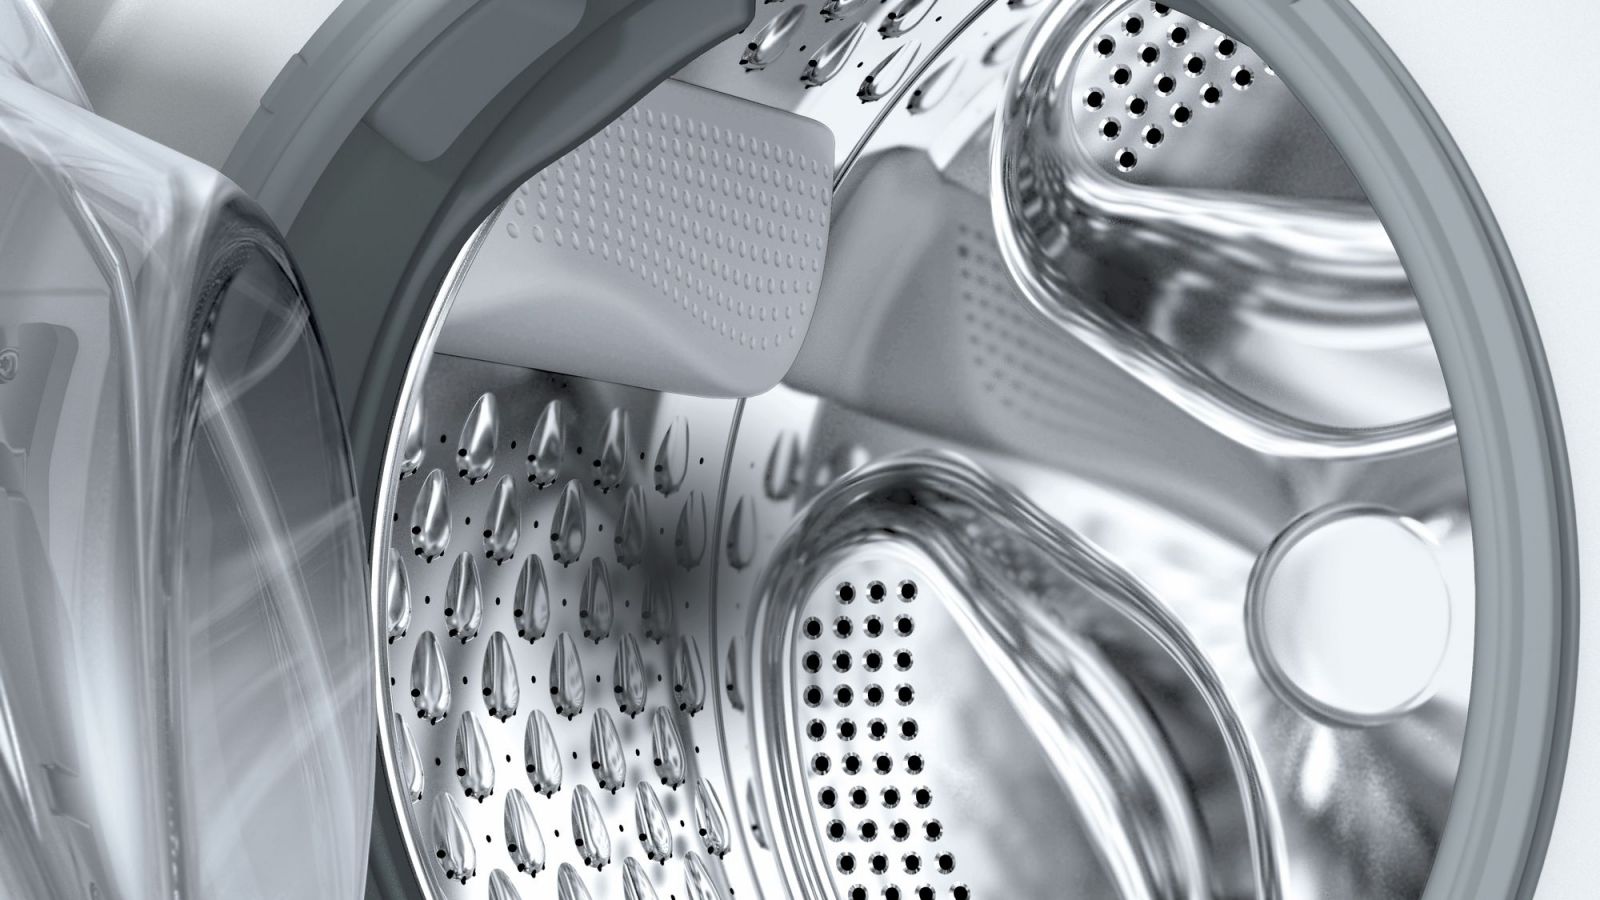 Máy giặt sấy kết hợp Bosch WVG30462SG